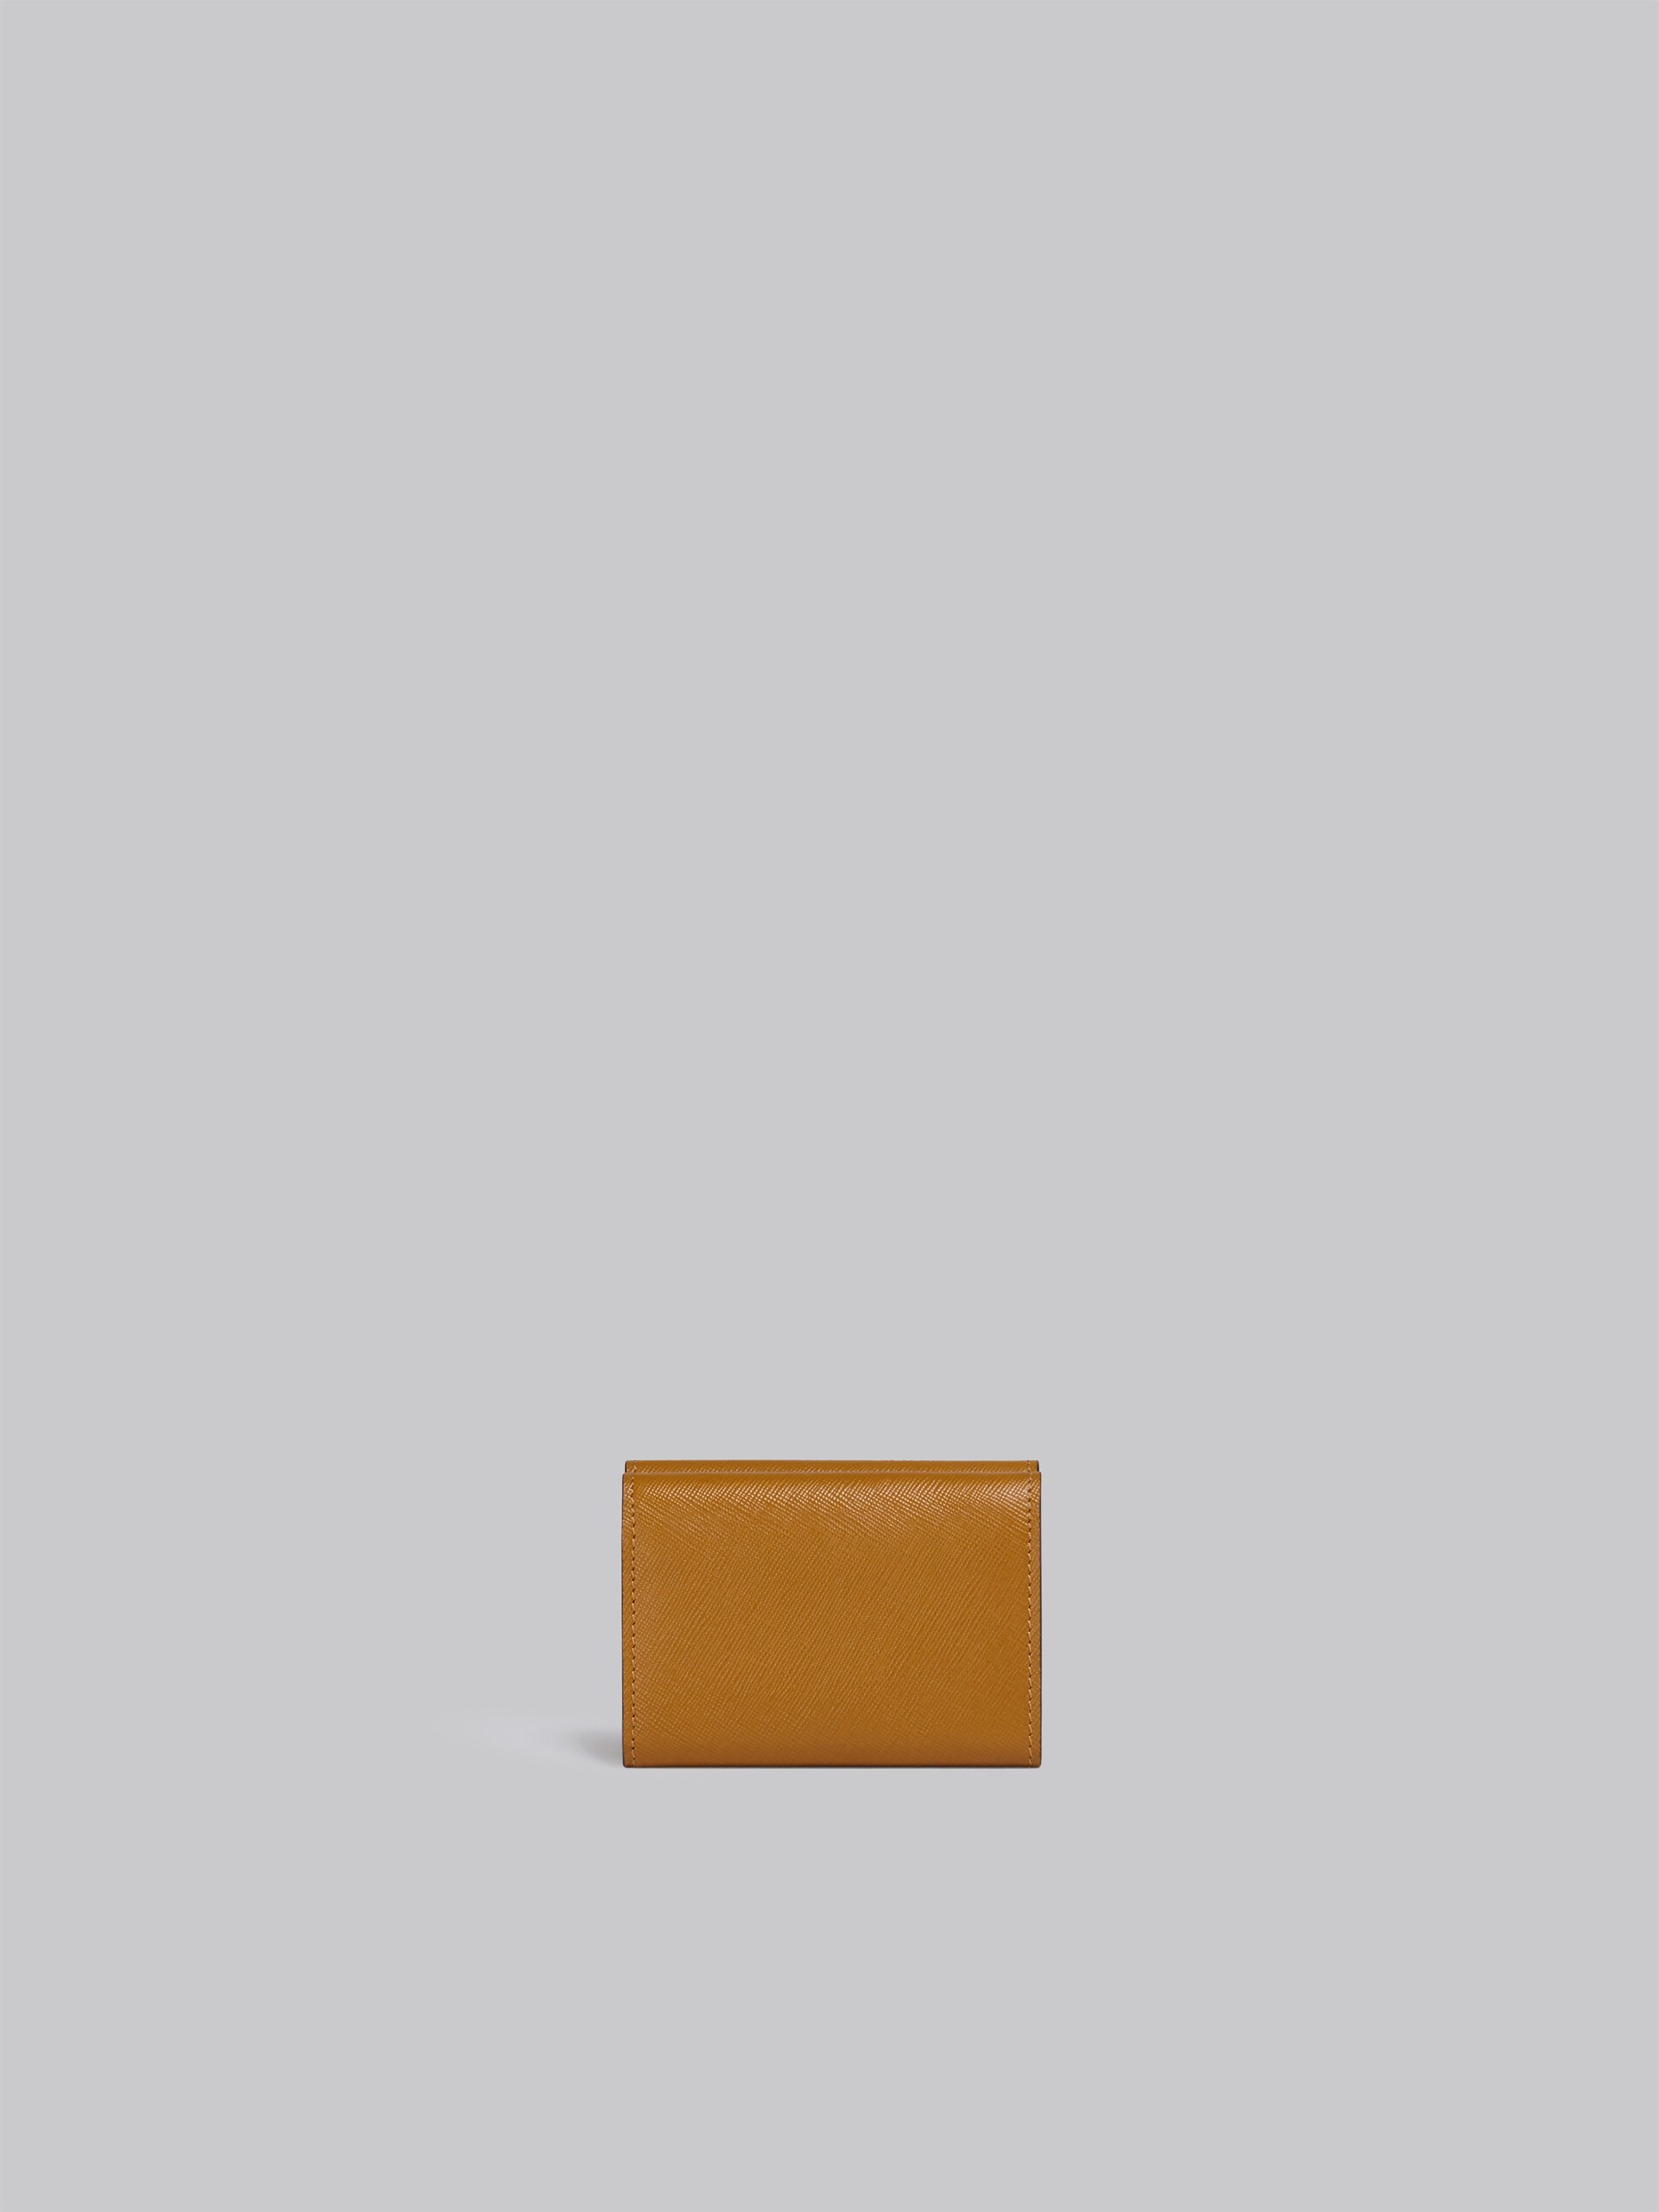 Portafoglio tri-fold in saffiano marrone lilla e nero - Portafogli - Image 3